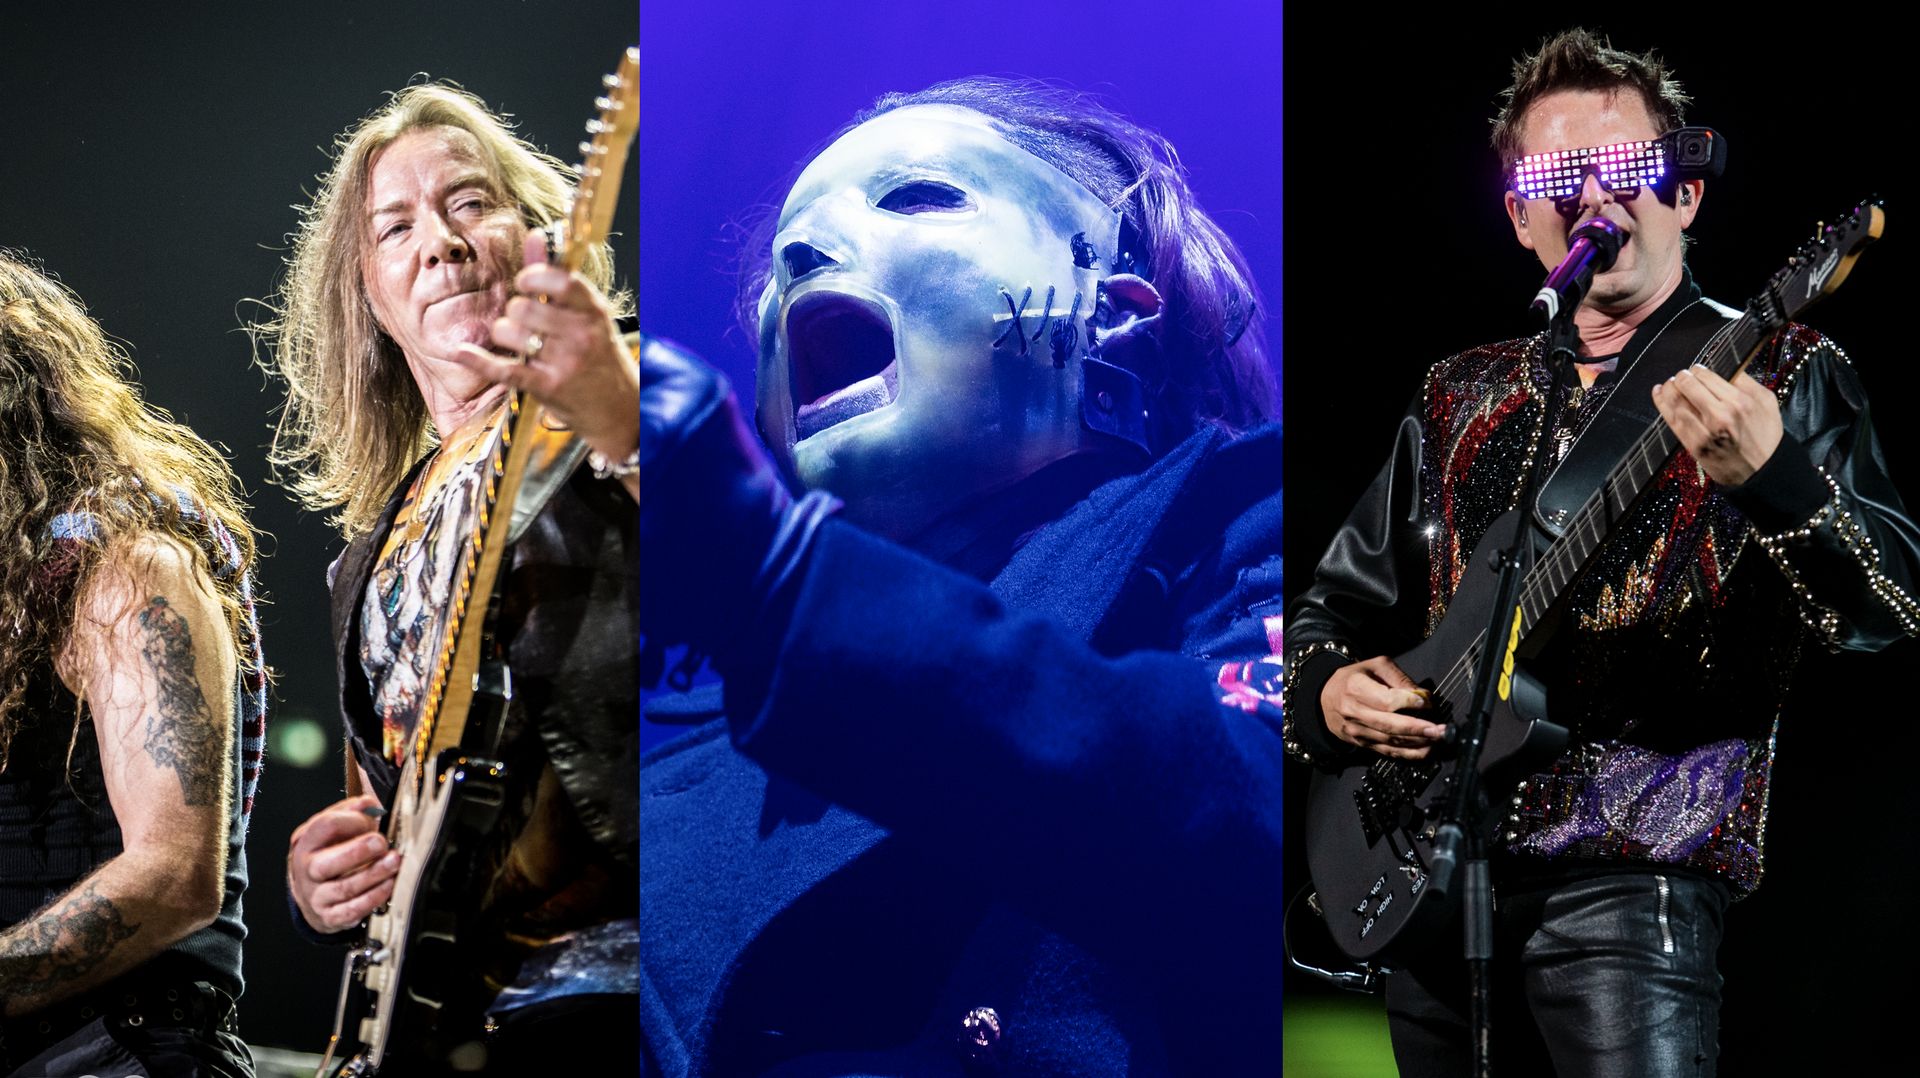 (G) Le bassiste et les guitaristes du groupe Iron Maiden Steve Harris, Dave Murray et Janick Gers en concert au Mediolanum Forum d’Assago le 22 juillet 2016.
(M) Corey Taylor de Slipknot se produisant en concert à l’Ericsson Globe Arena à Stockholm le 21